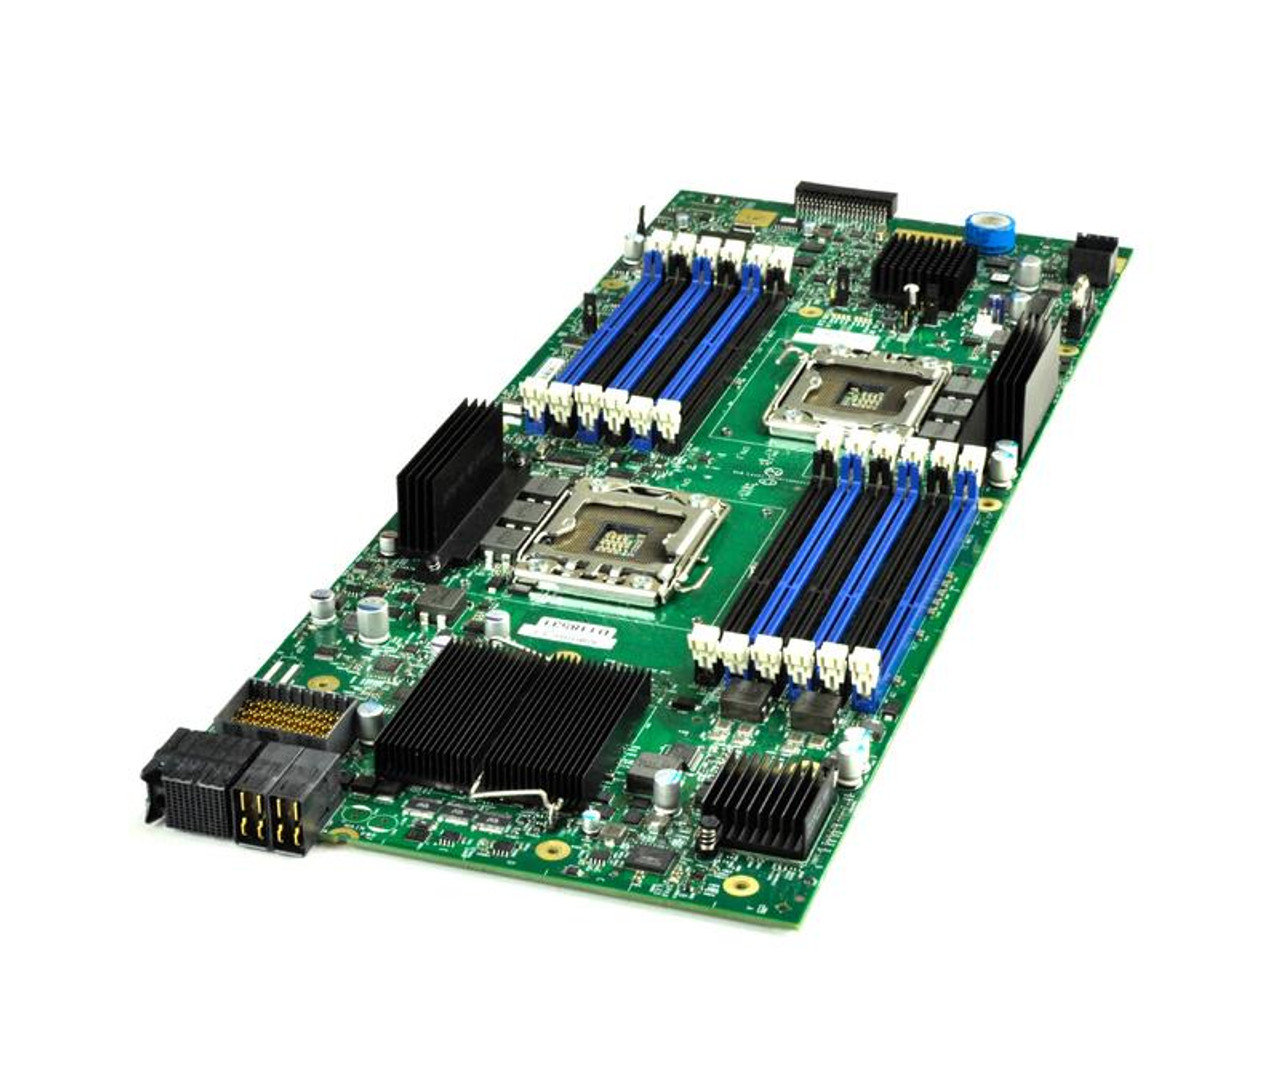 74-7333-02 Cisco System Board (Motherboard) for UCS B200 M2 Server (Refurbished)